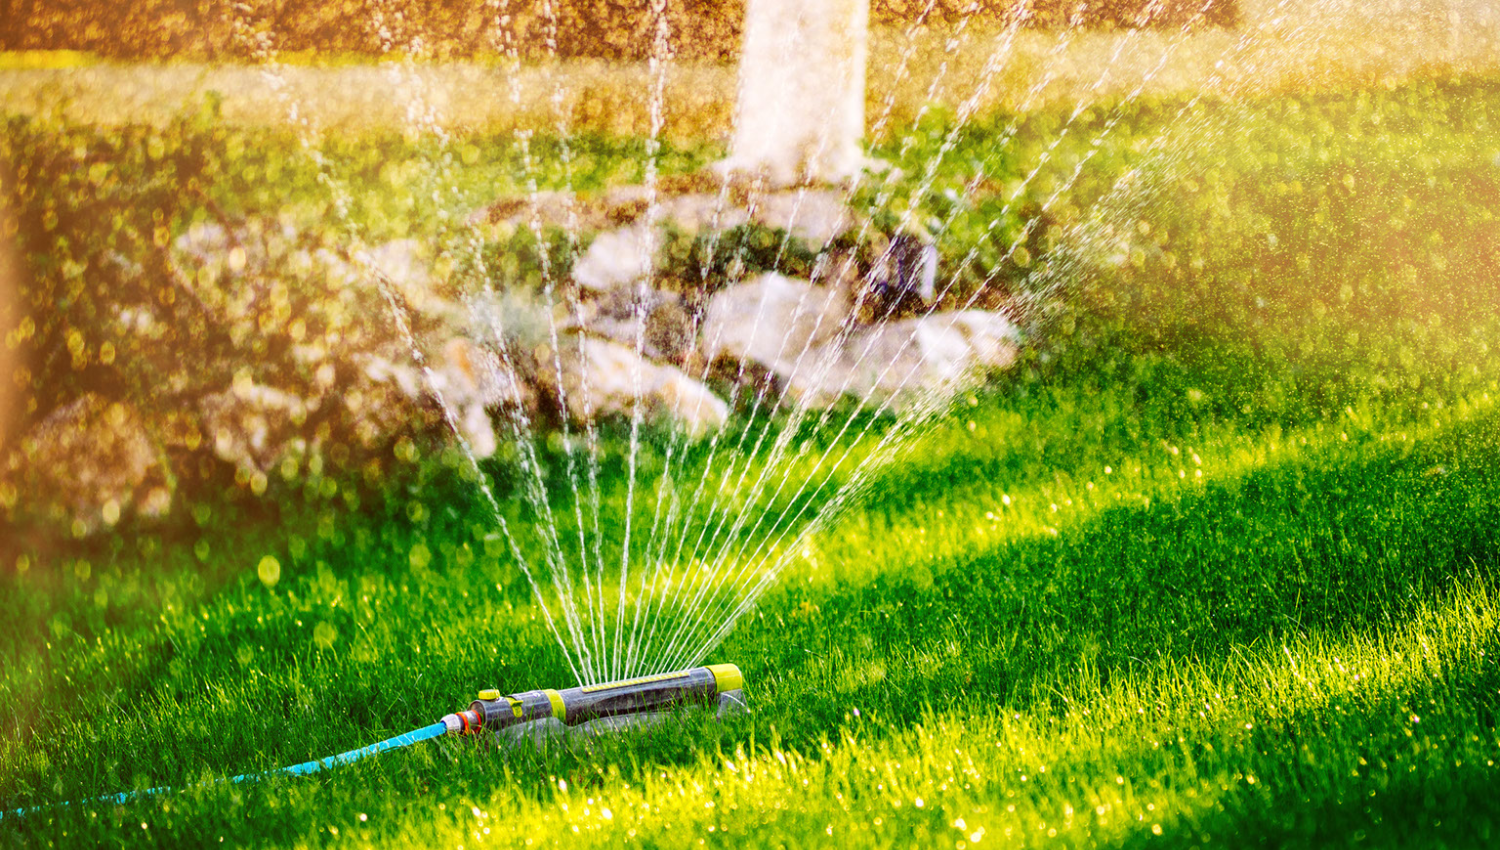 Sprinkles watering a lawn